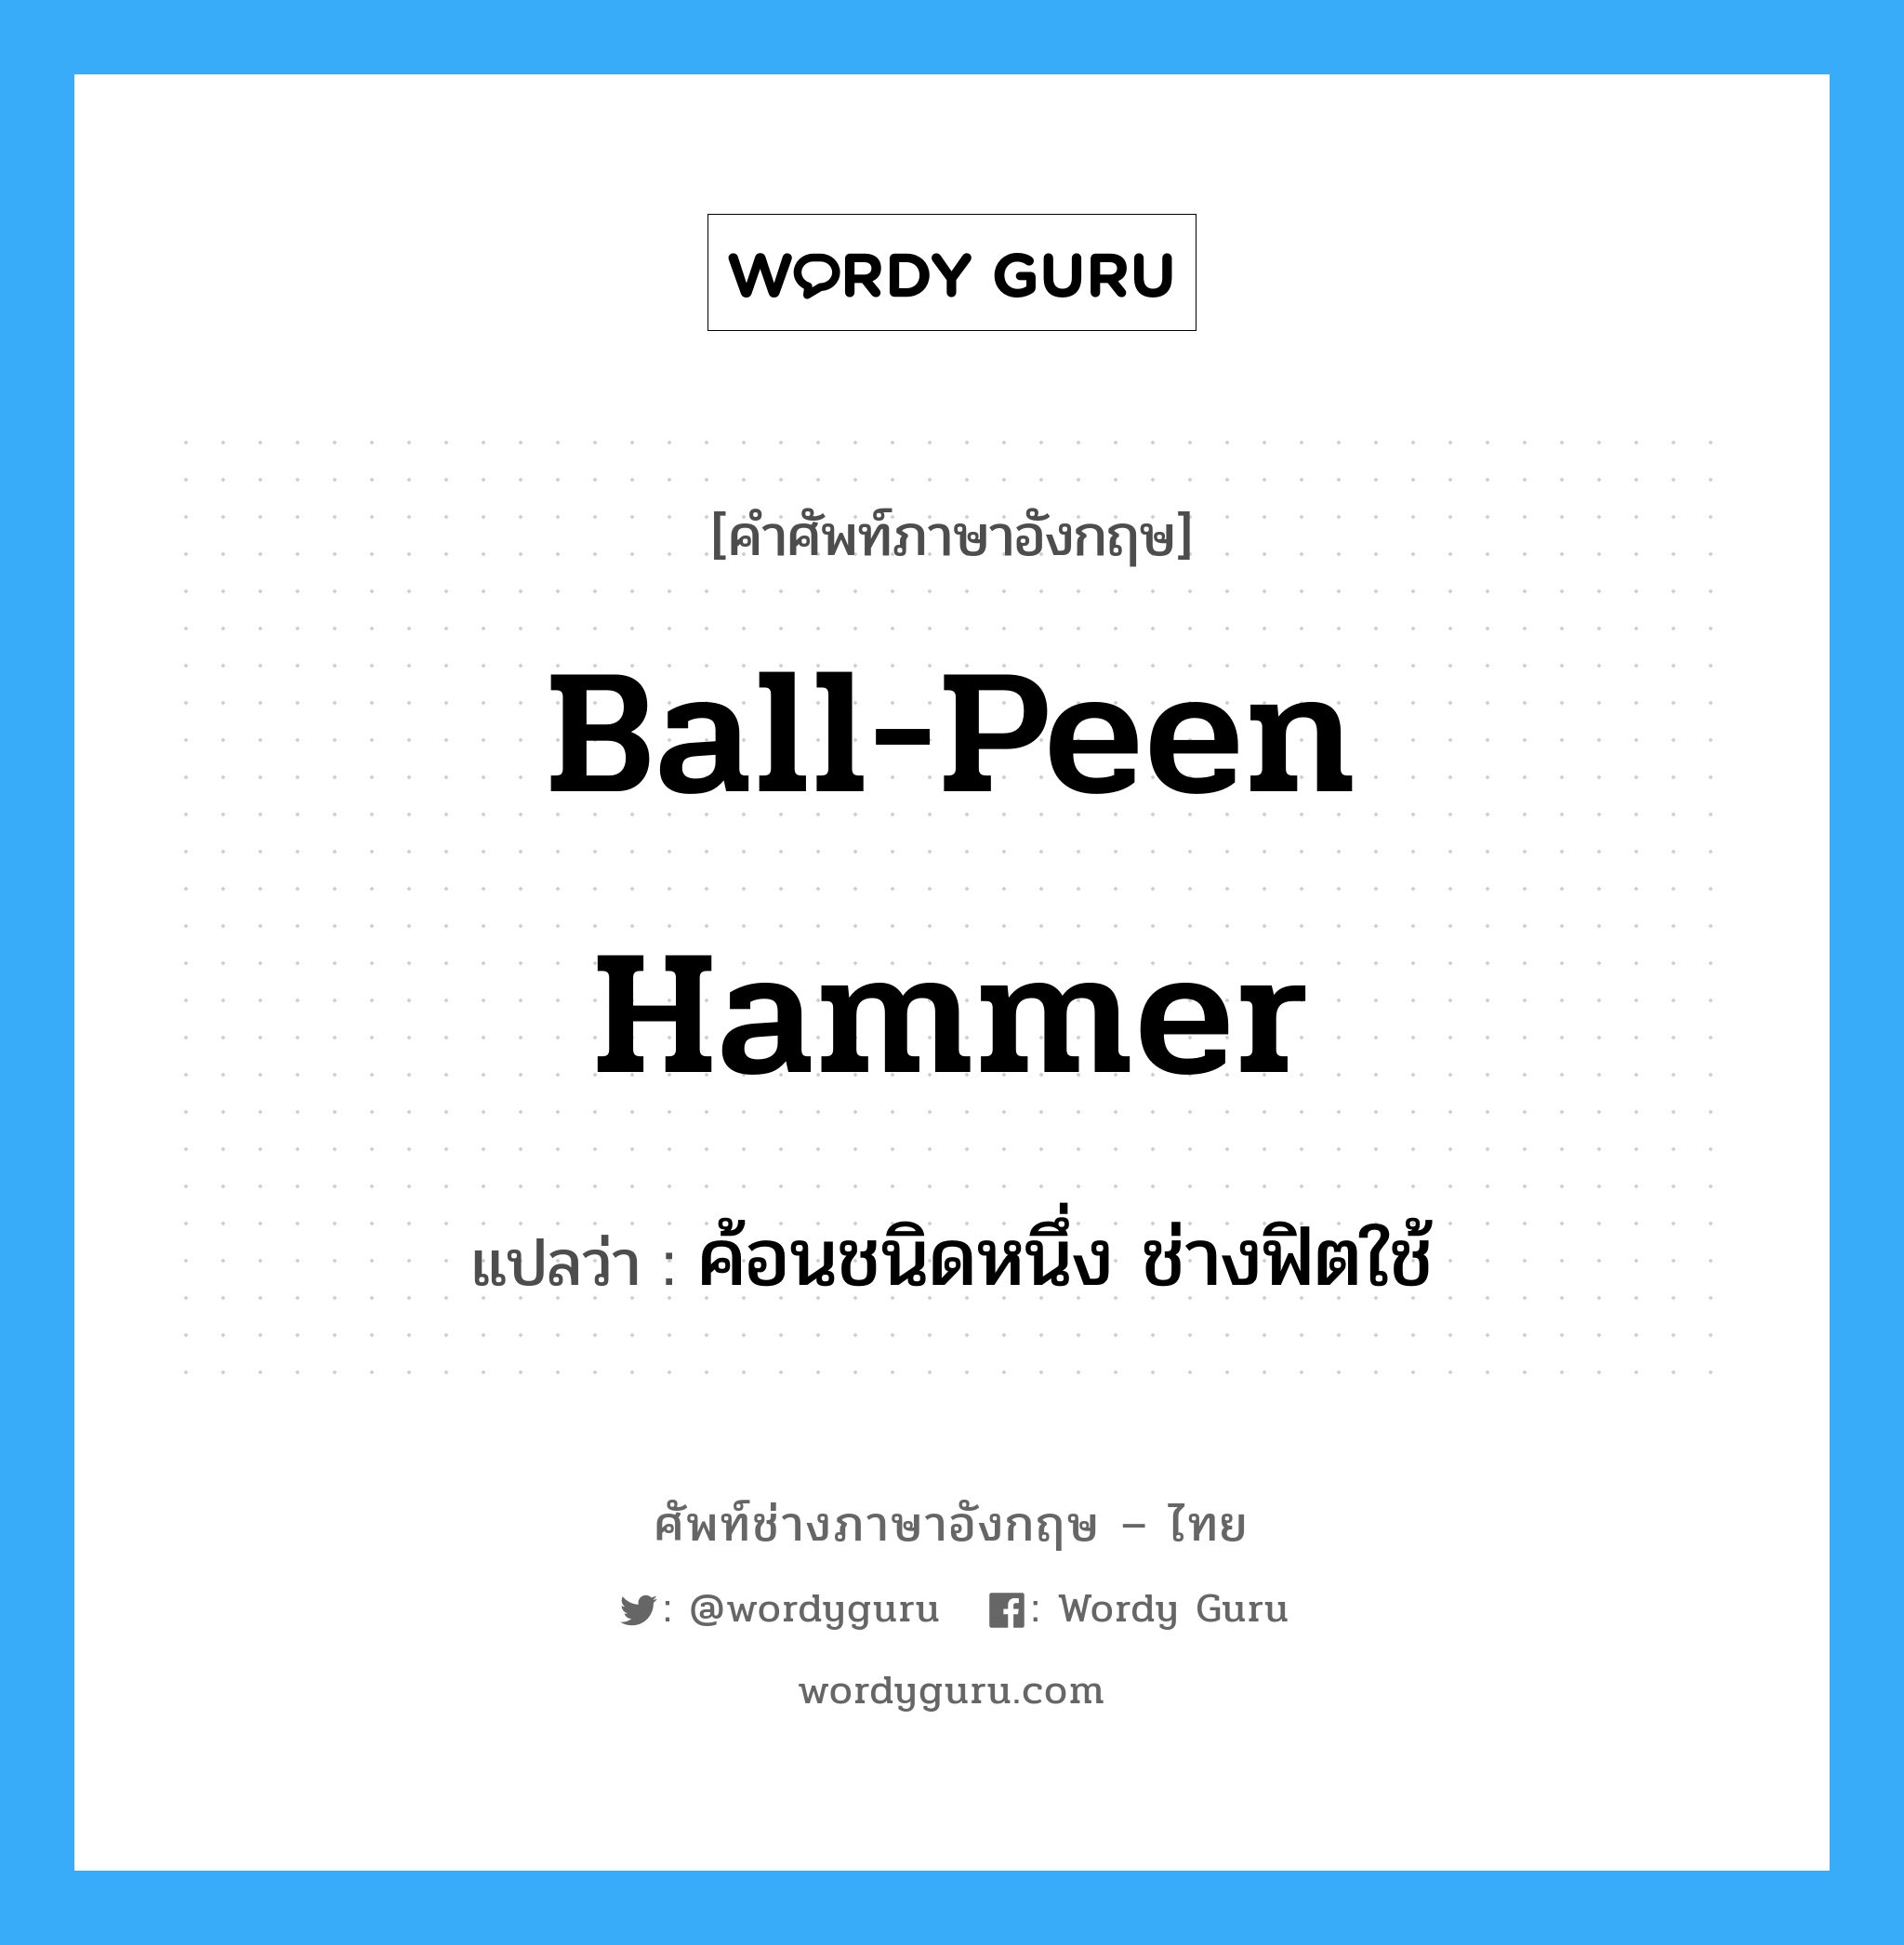 ค้อนชนิดหนึ่ง ช่างฟิตใช้ ภาษาอังกฤษ?, คำศัพท์ช่างภาษาอังกฤษ - ไทย ค้อนชนิดหนึ่ง ช่างฟิตใช้ คำศัพท์ภาษาอังกฤษ ค้อนชนิดหนึ่ง ช่างฟิตใช้ แปลว่า ball-peen hammer